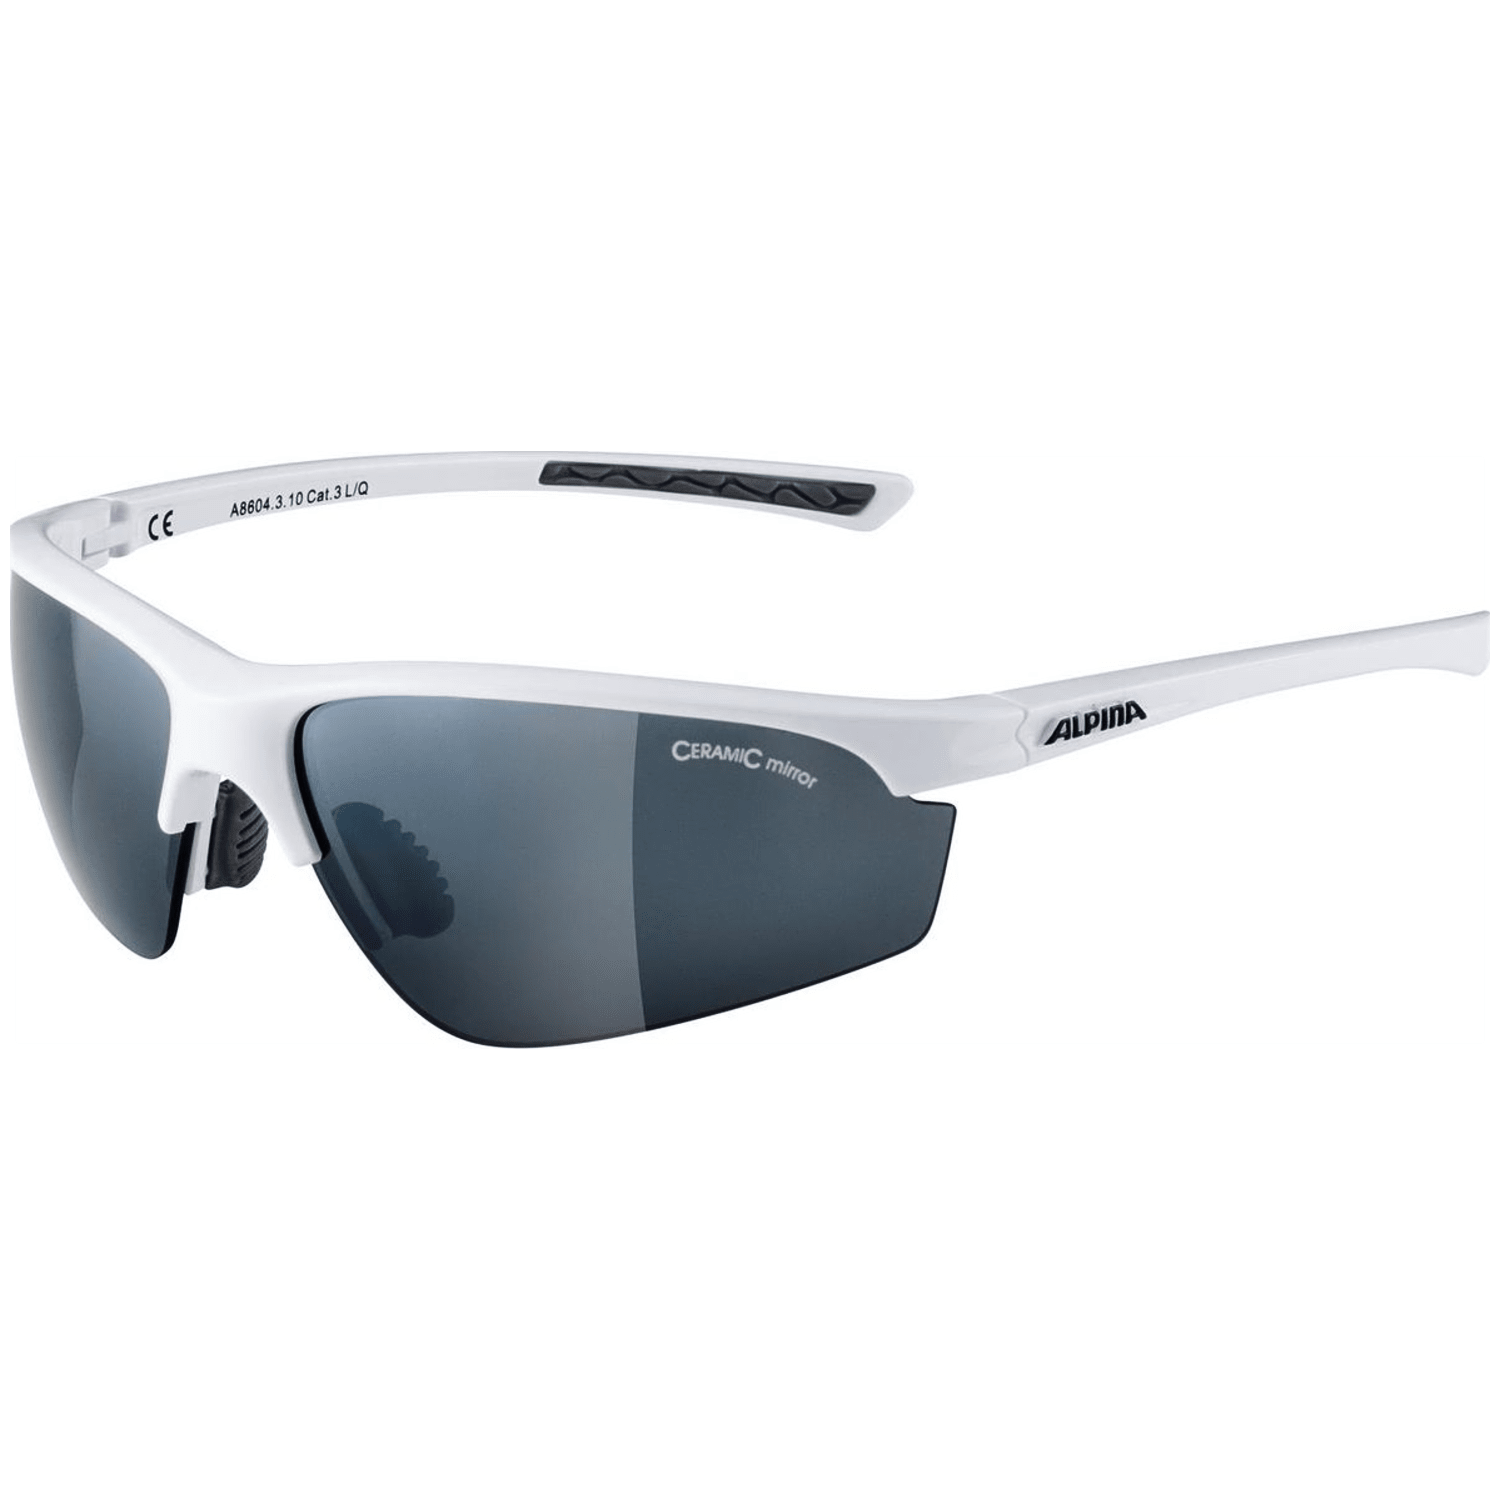 Alpina Tri-Effect 2.0 Sonnenbrille Unisex